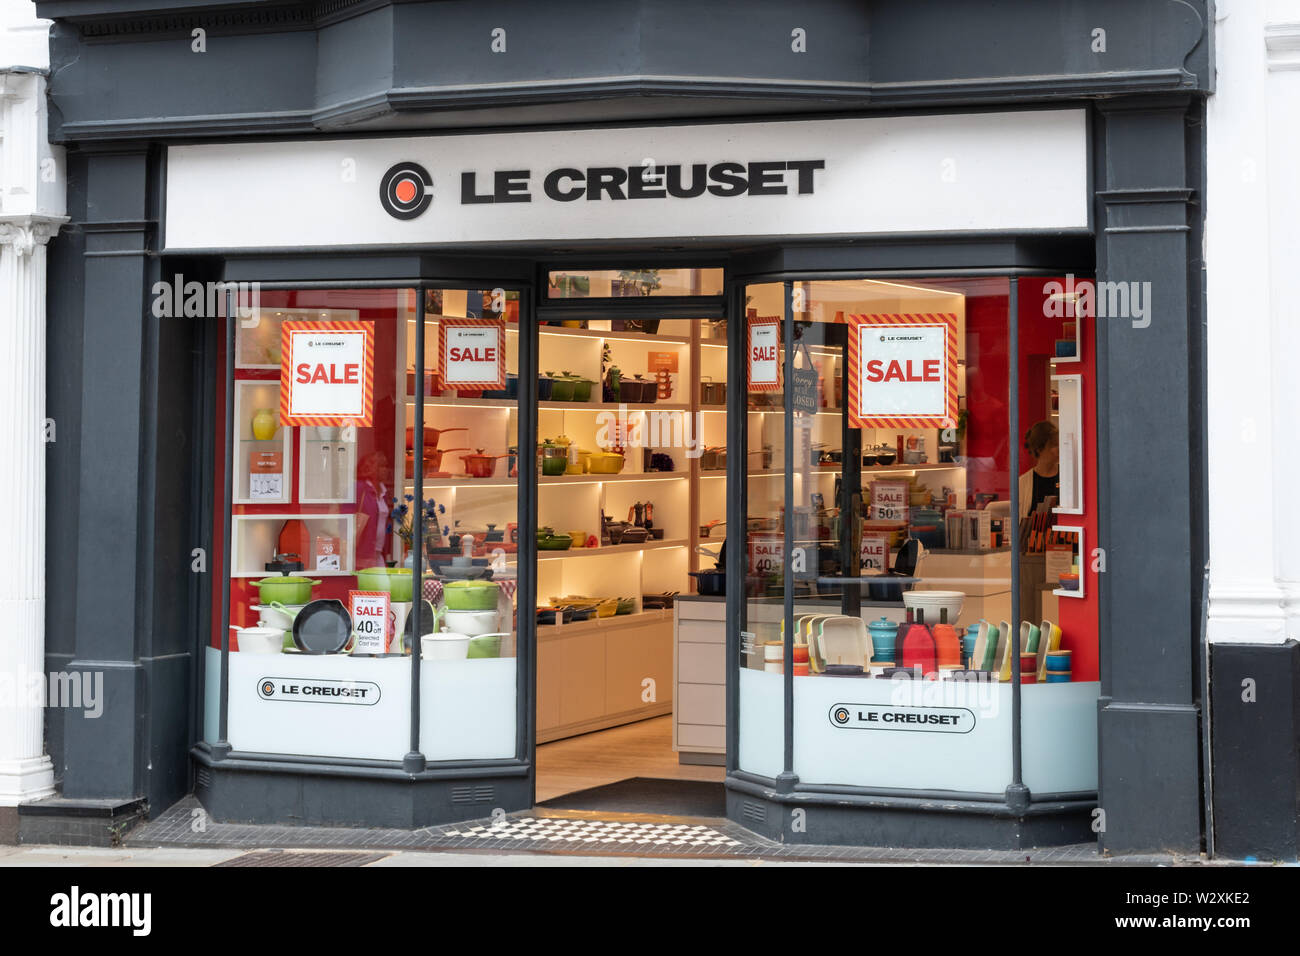 Le Creuset shop oder Geschäft vor, französischen Einzelhändler von Kochgeschirr, am besten bekannt für die bunten emailliertes Gusseisen Kochgeschirr, Großbritannien Stockfoto